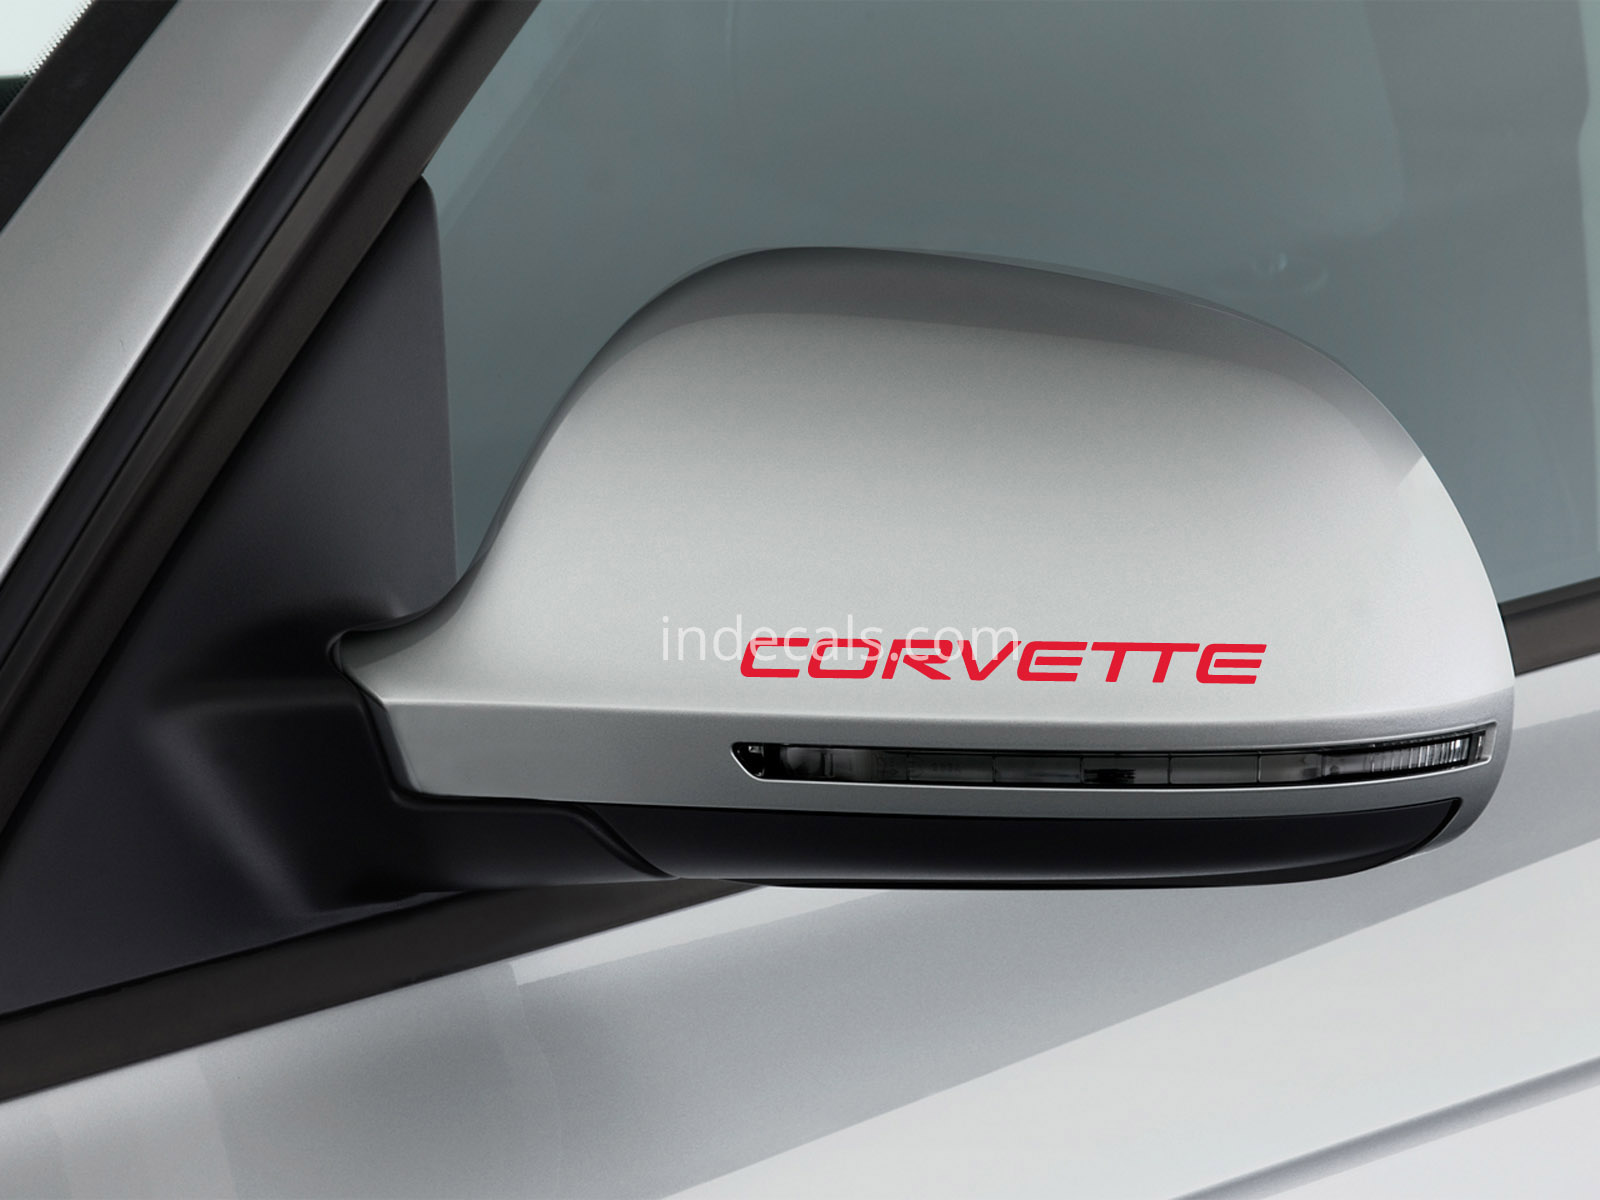 3 x Corvette Stickers for Mirrors - White